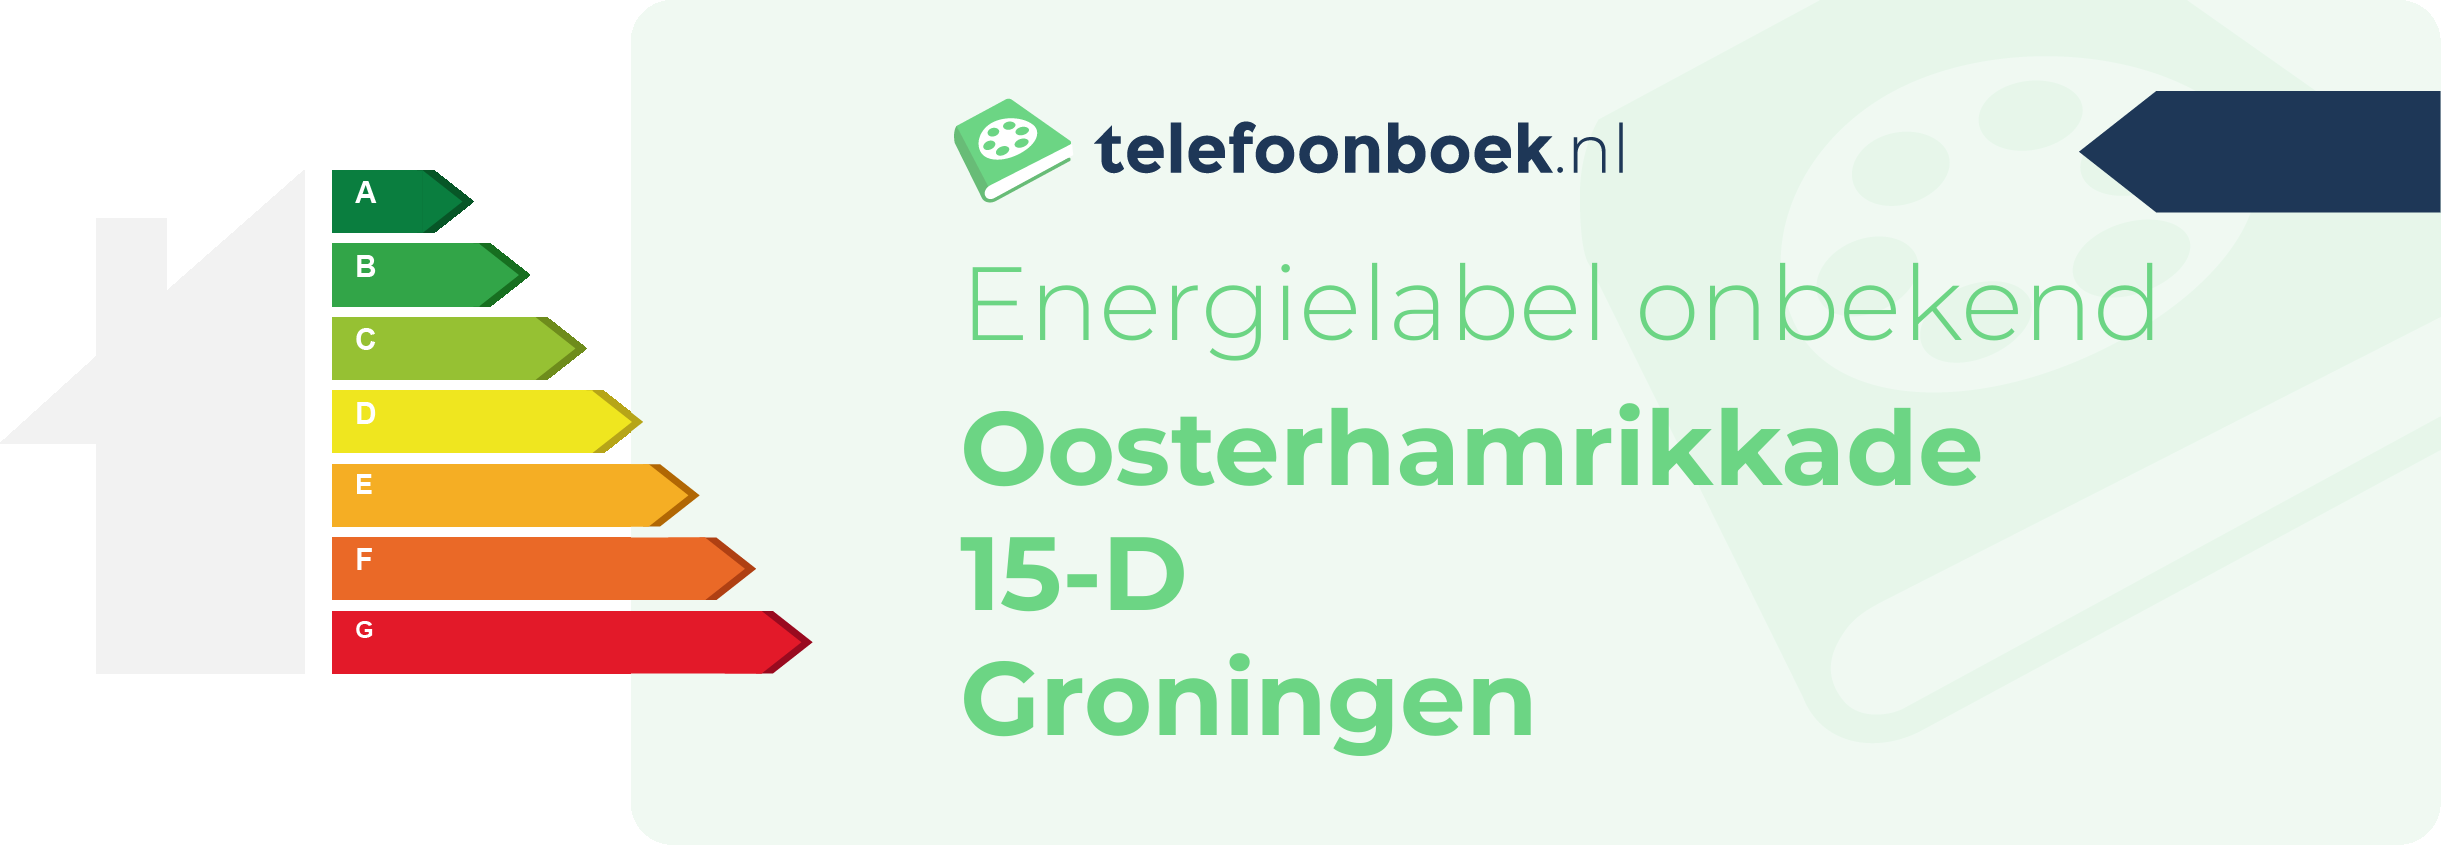 Energielabel Oosterhamrikkade 15-D Groningen